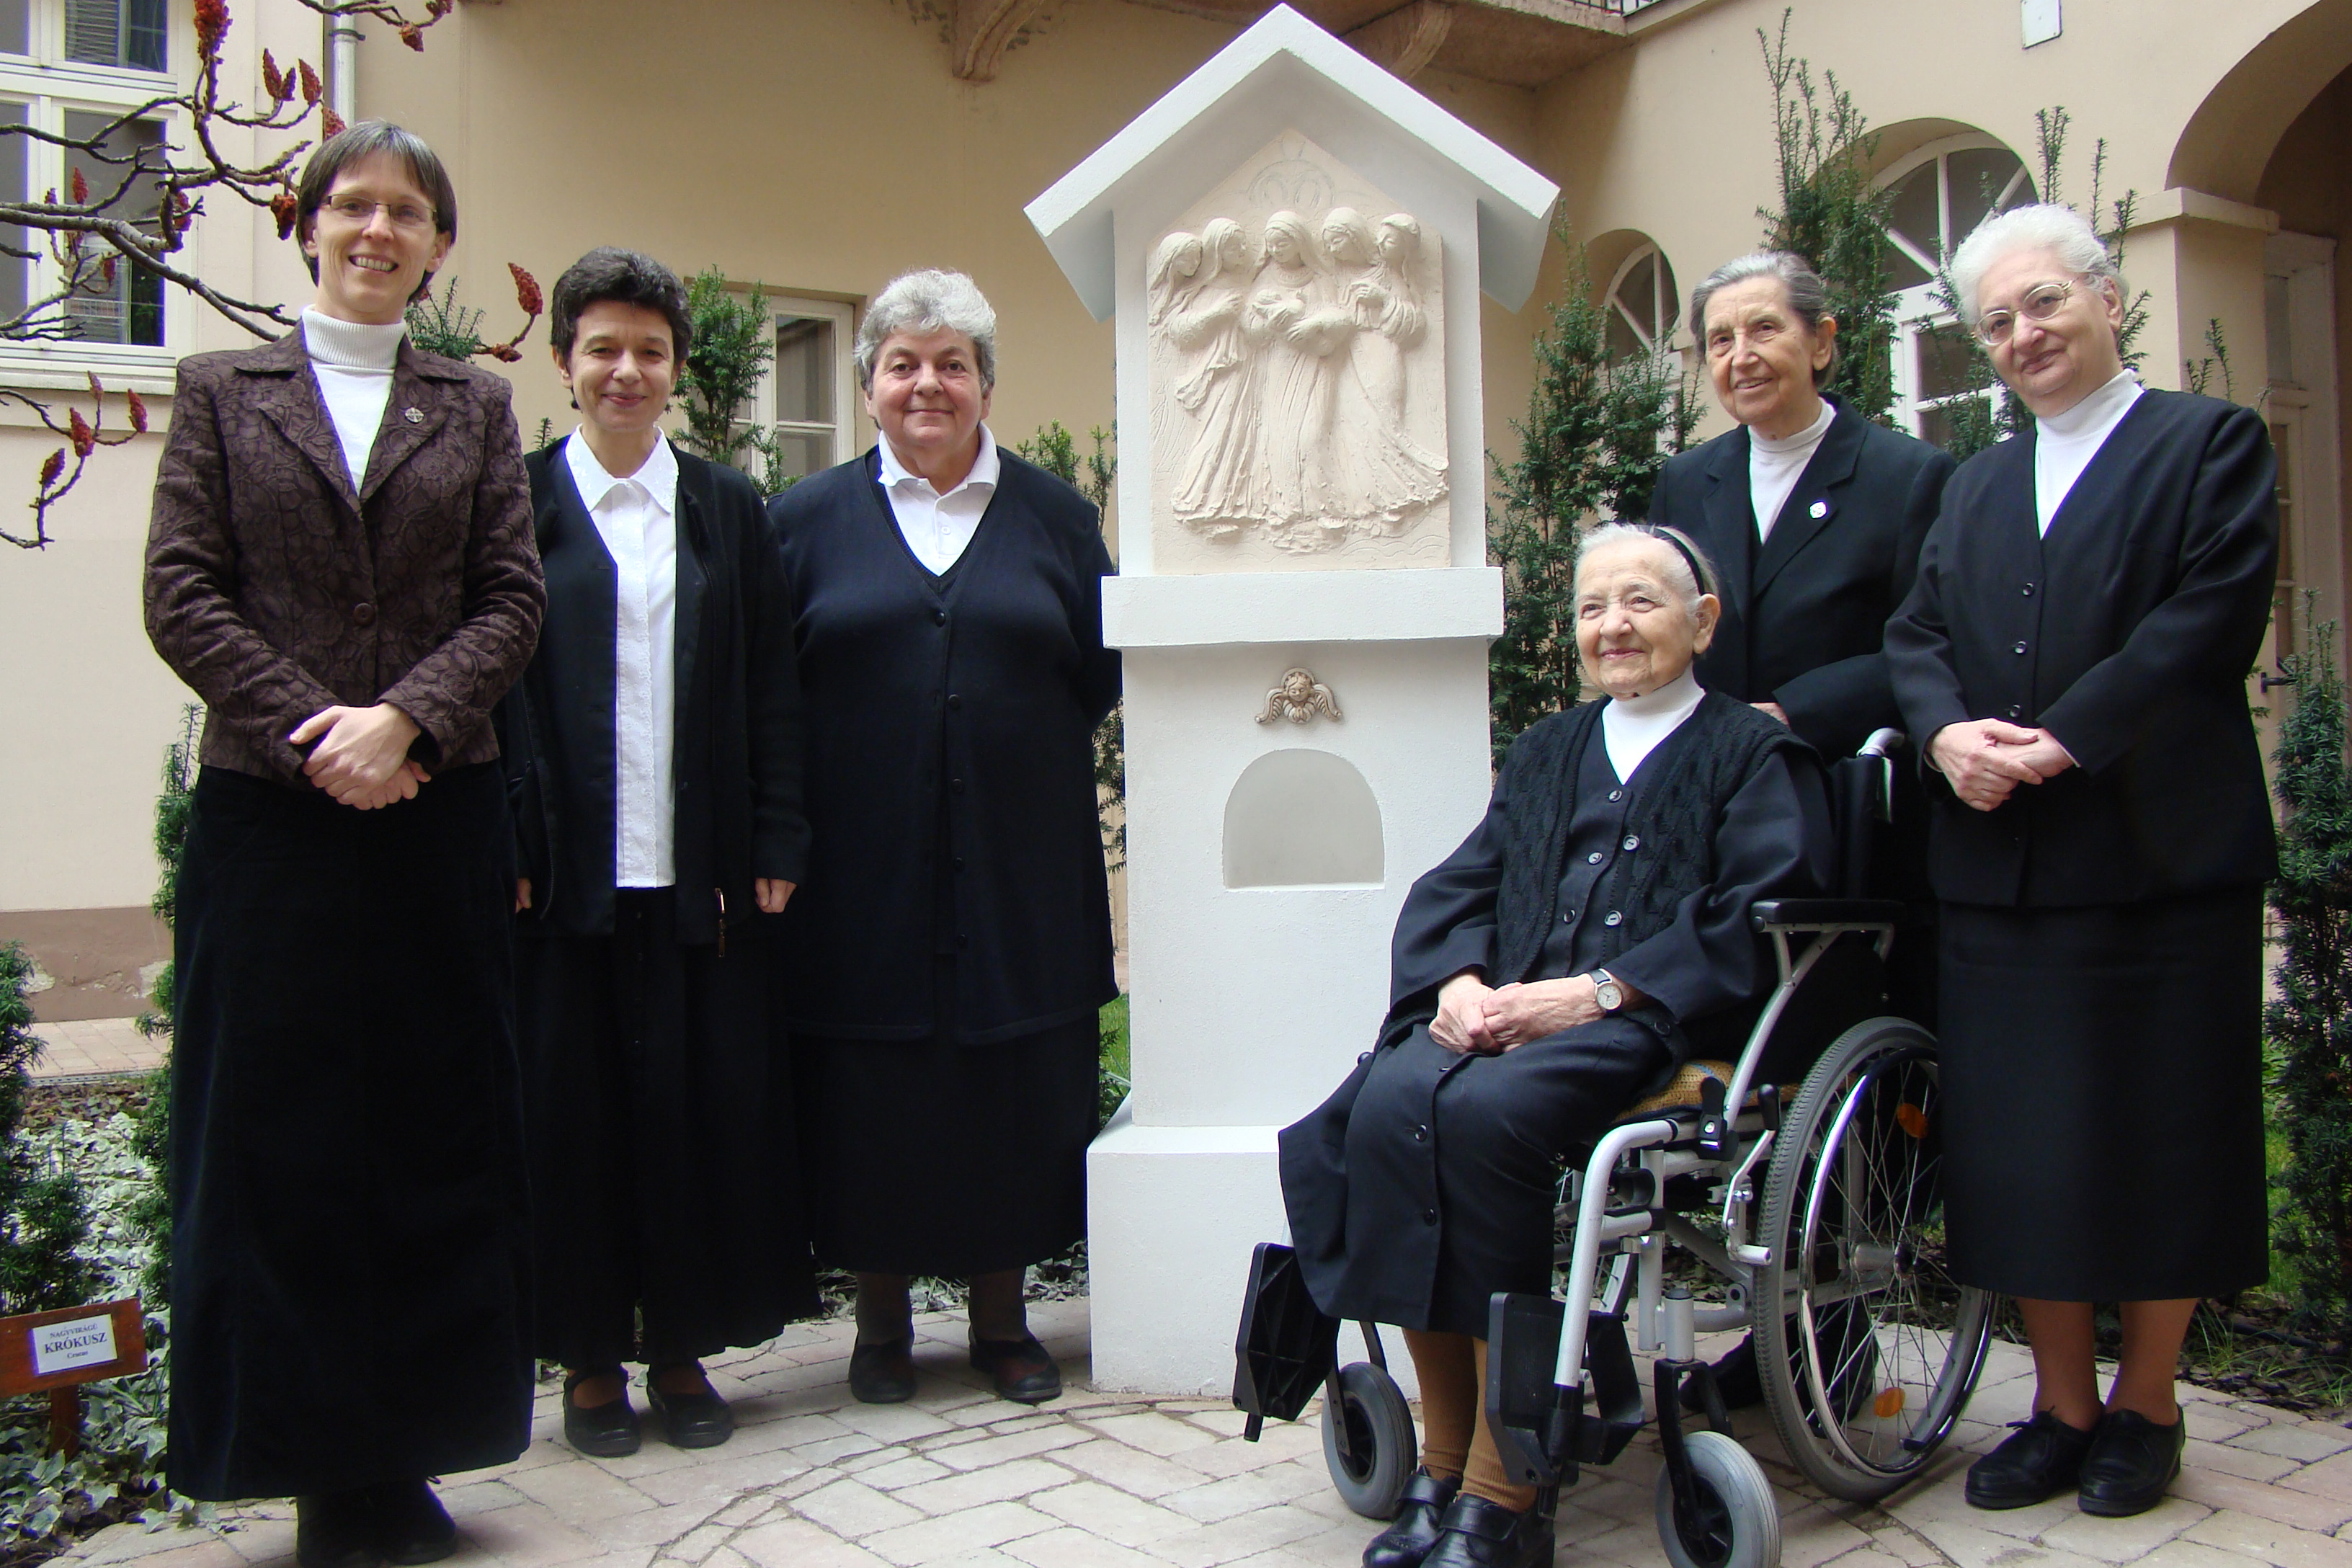 Jelenlegi és egykori tartományfőnöknők (balról jobbra): Lobmayer M. Judit, Ulrik M. Monika, Pekó M. Adrien, Kárpát M. Relindisz, Szobonya M. Jolánta, Bácsai M. Jozefina